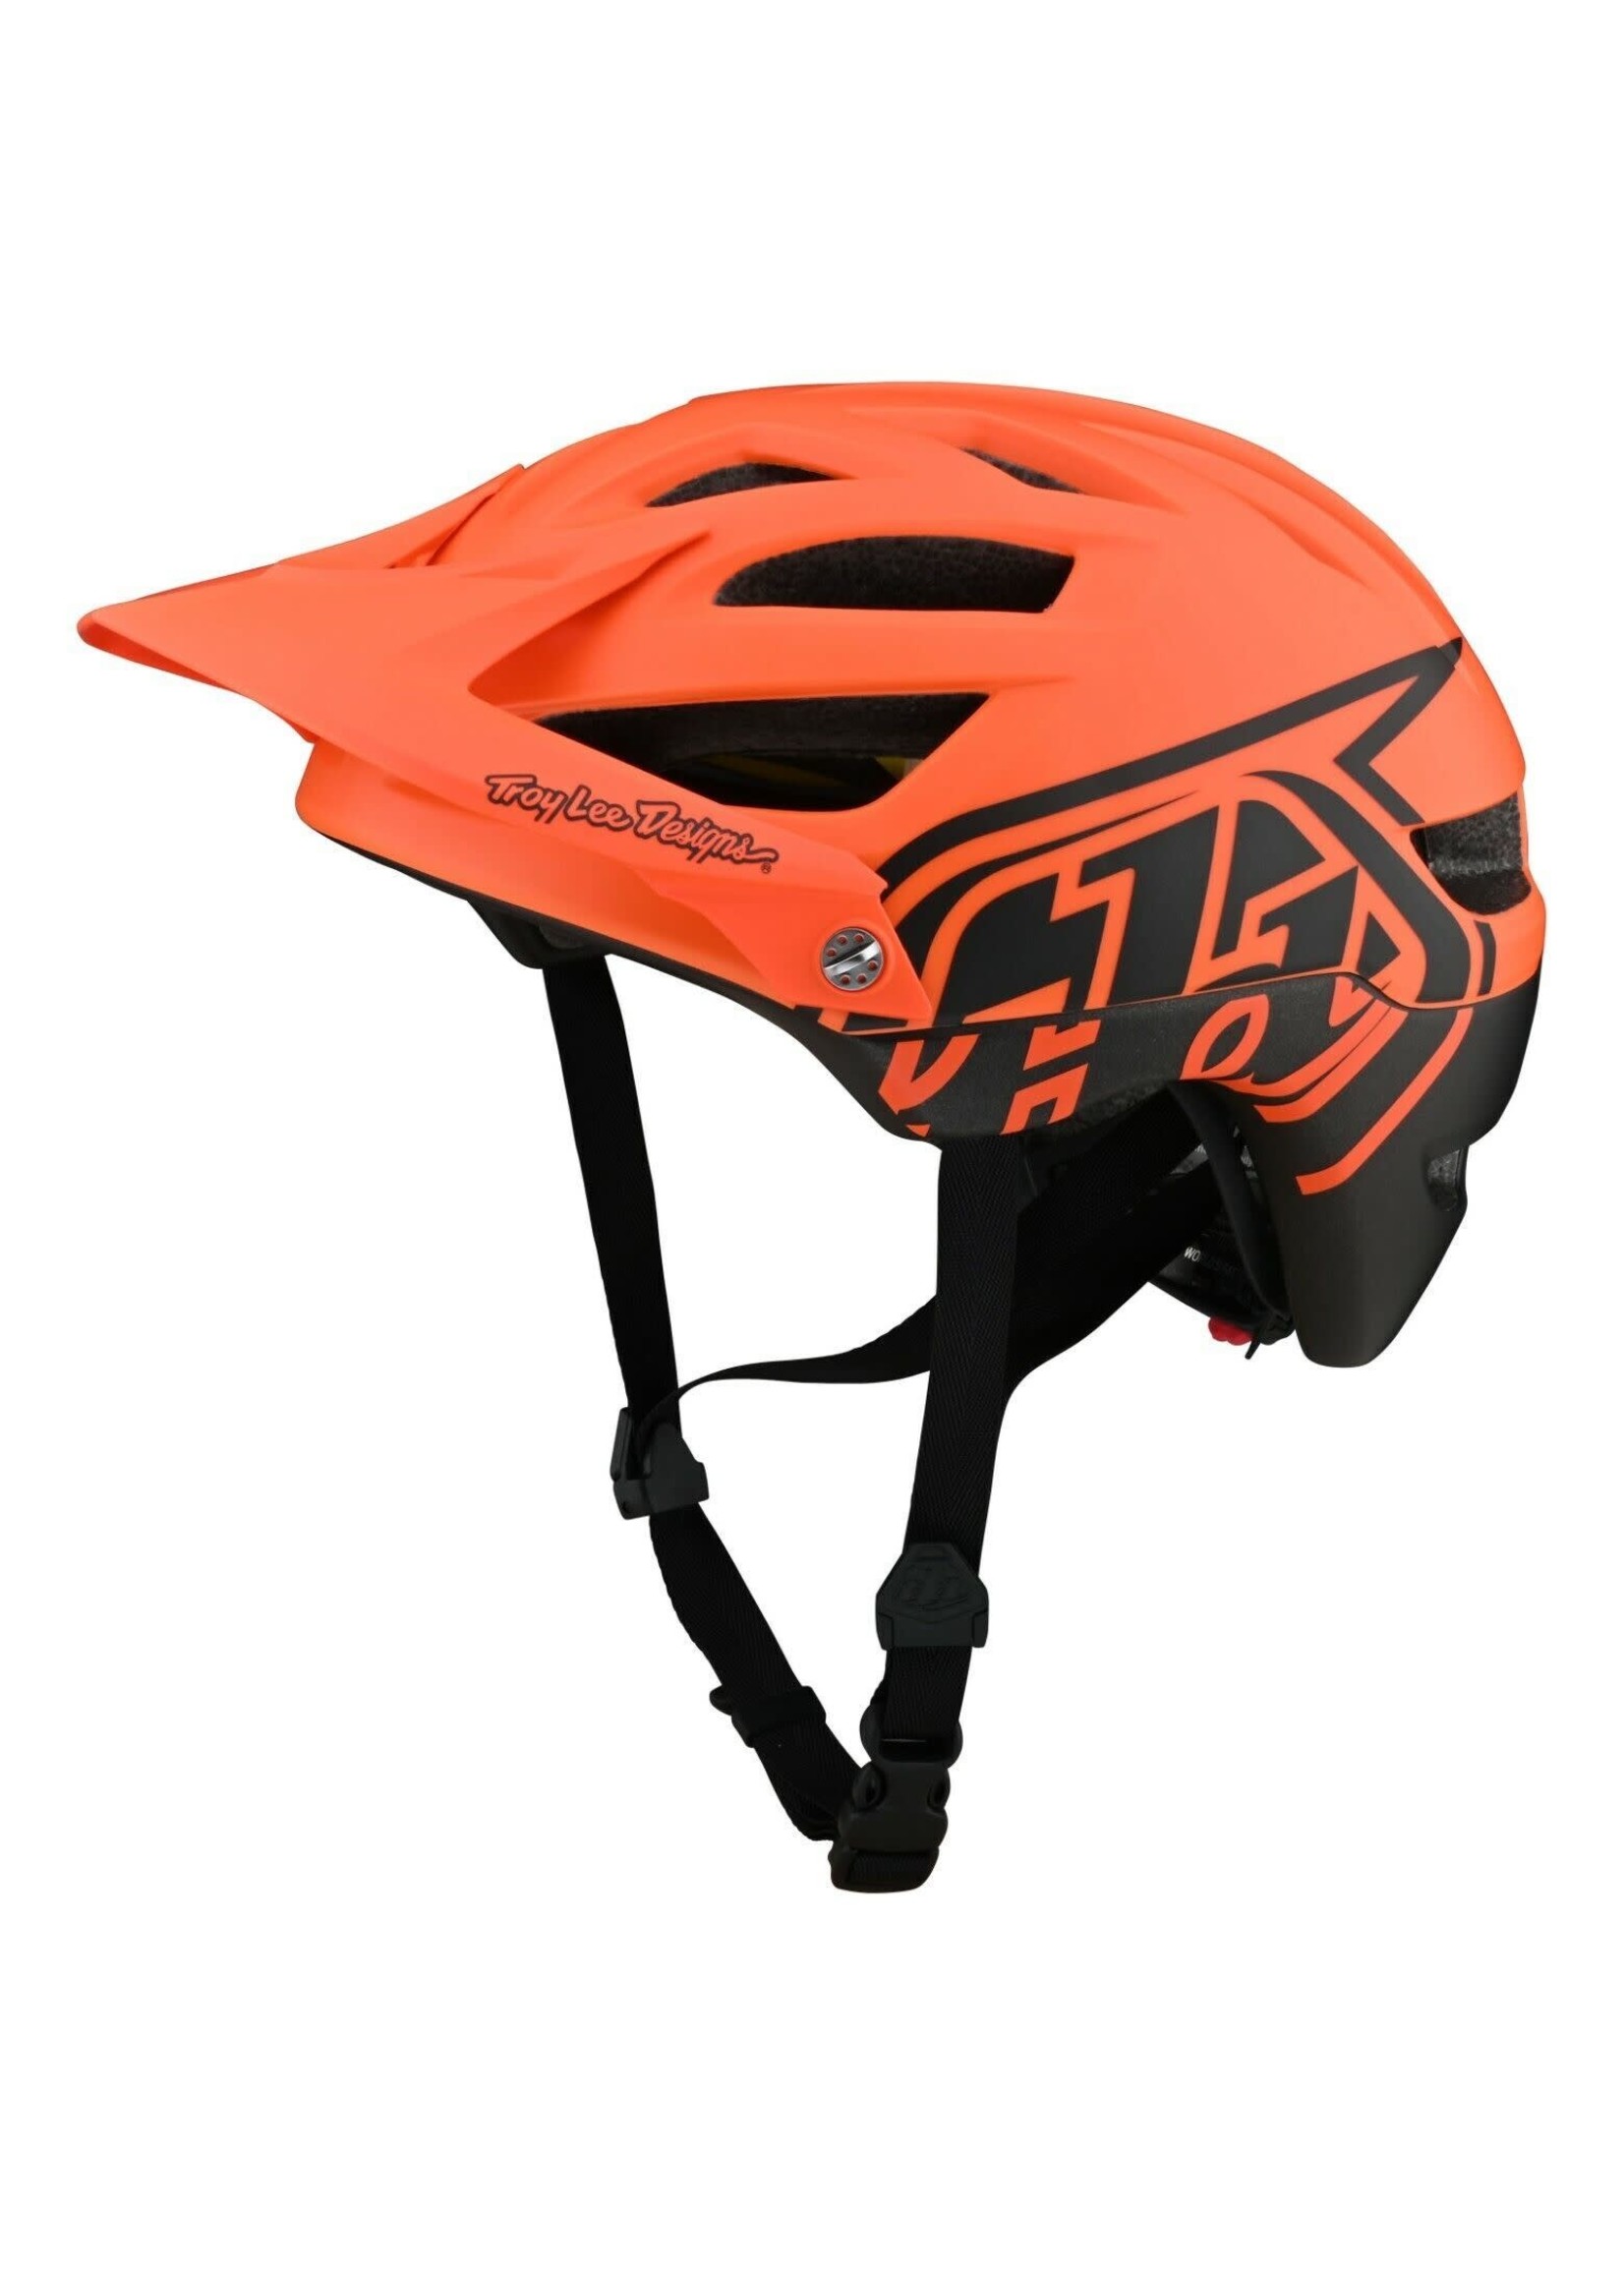 Troy Lee Designs A1 MIPS Bike Helmet